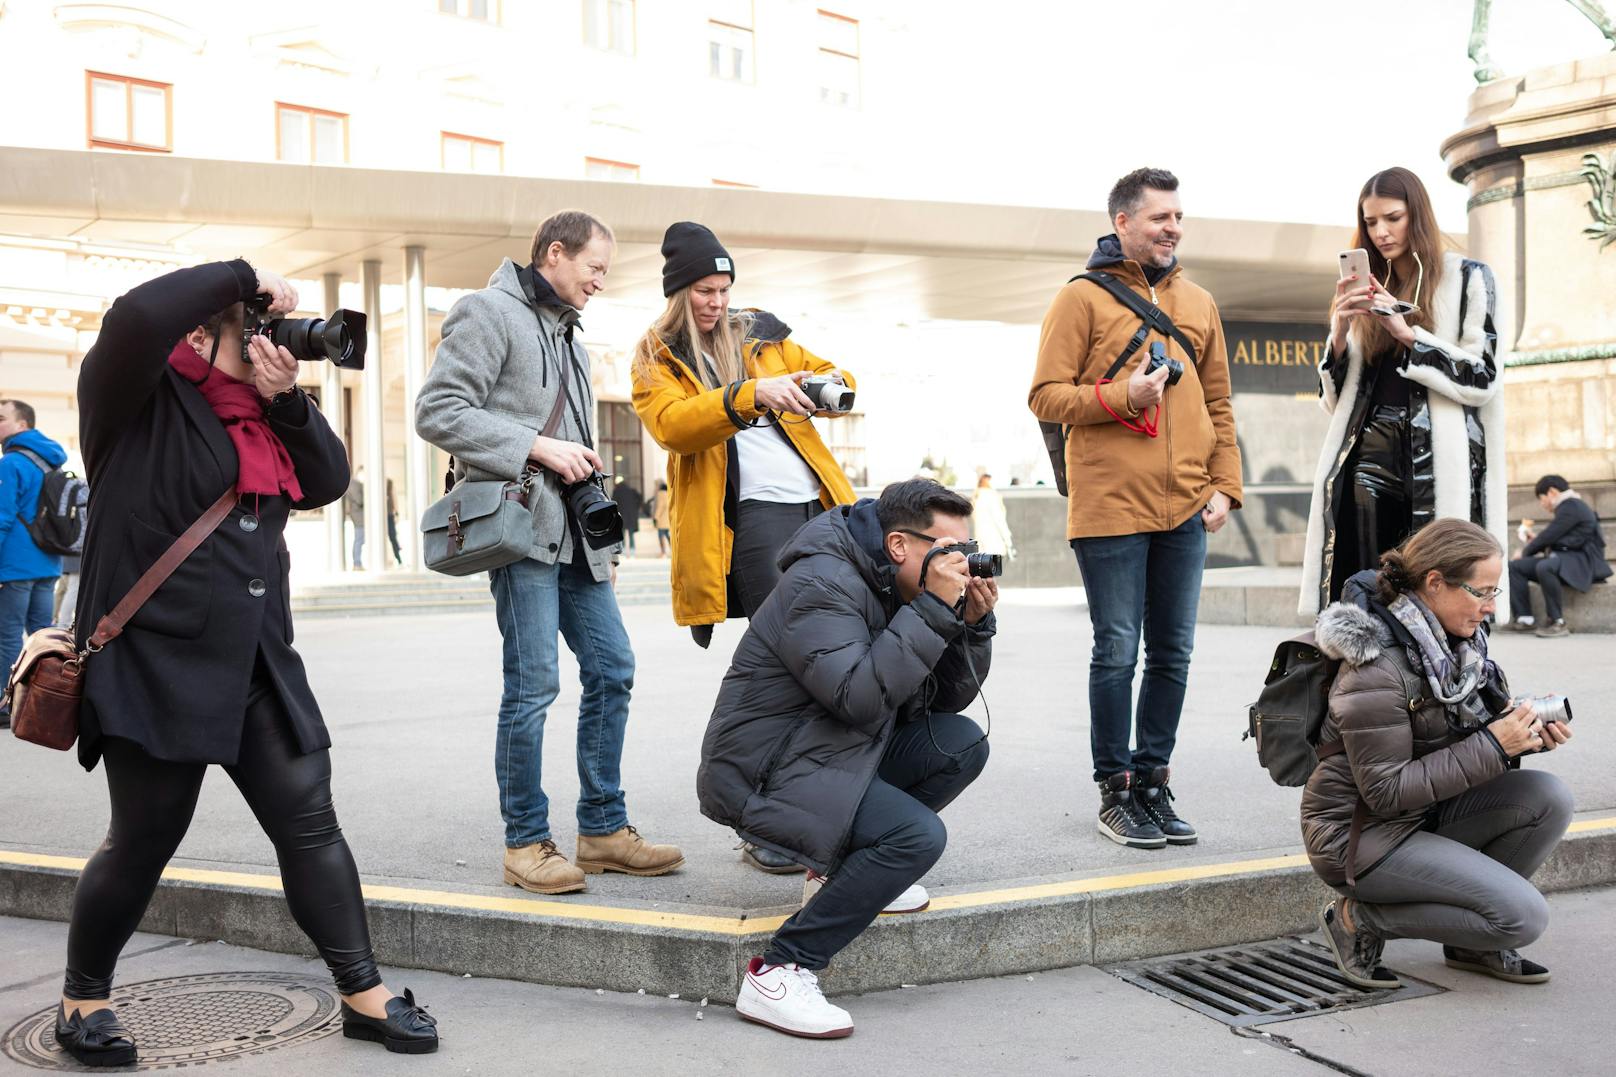 "Unser Ziel ist es, den Schülern ein wenig die Geschichte der Fotografie anschaulich näherzubringen, mit der Leica durch die Erfindung des Kleinbild-Formates eng verbunden ist", so Christian Chladek, der Leiter der Leica Akademie Austria.